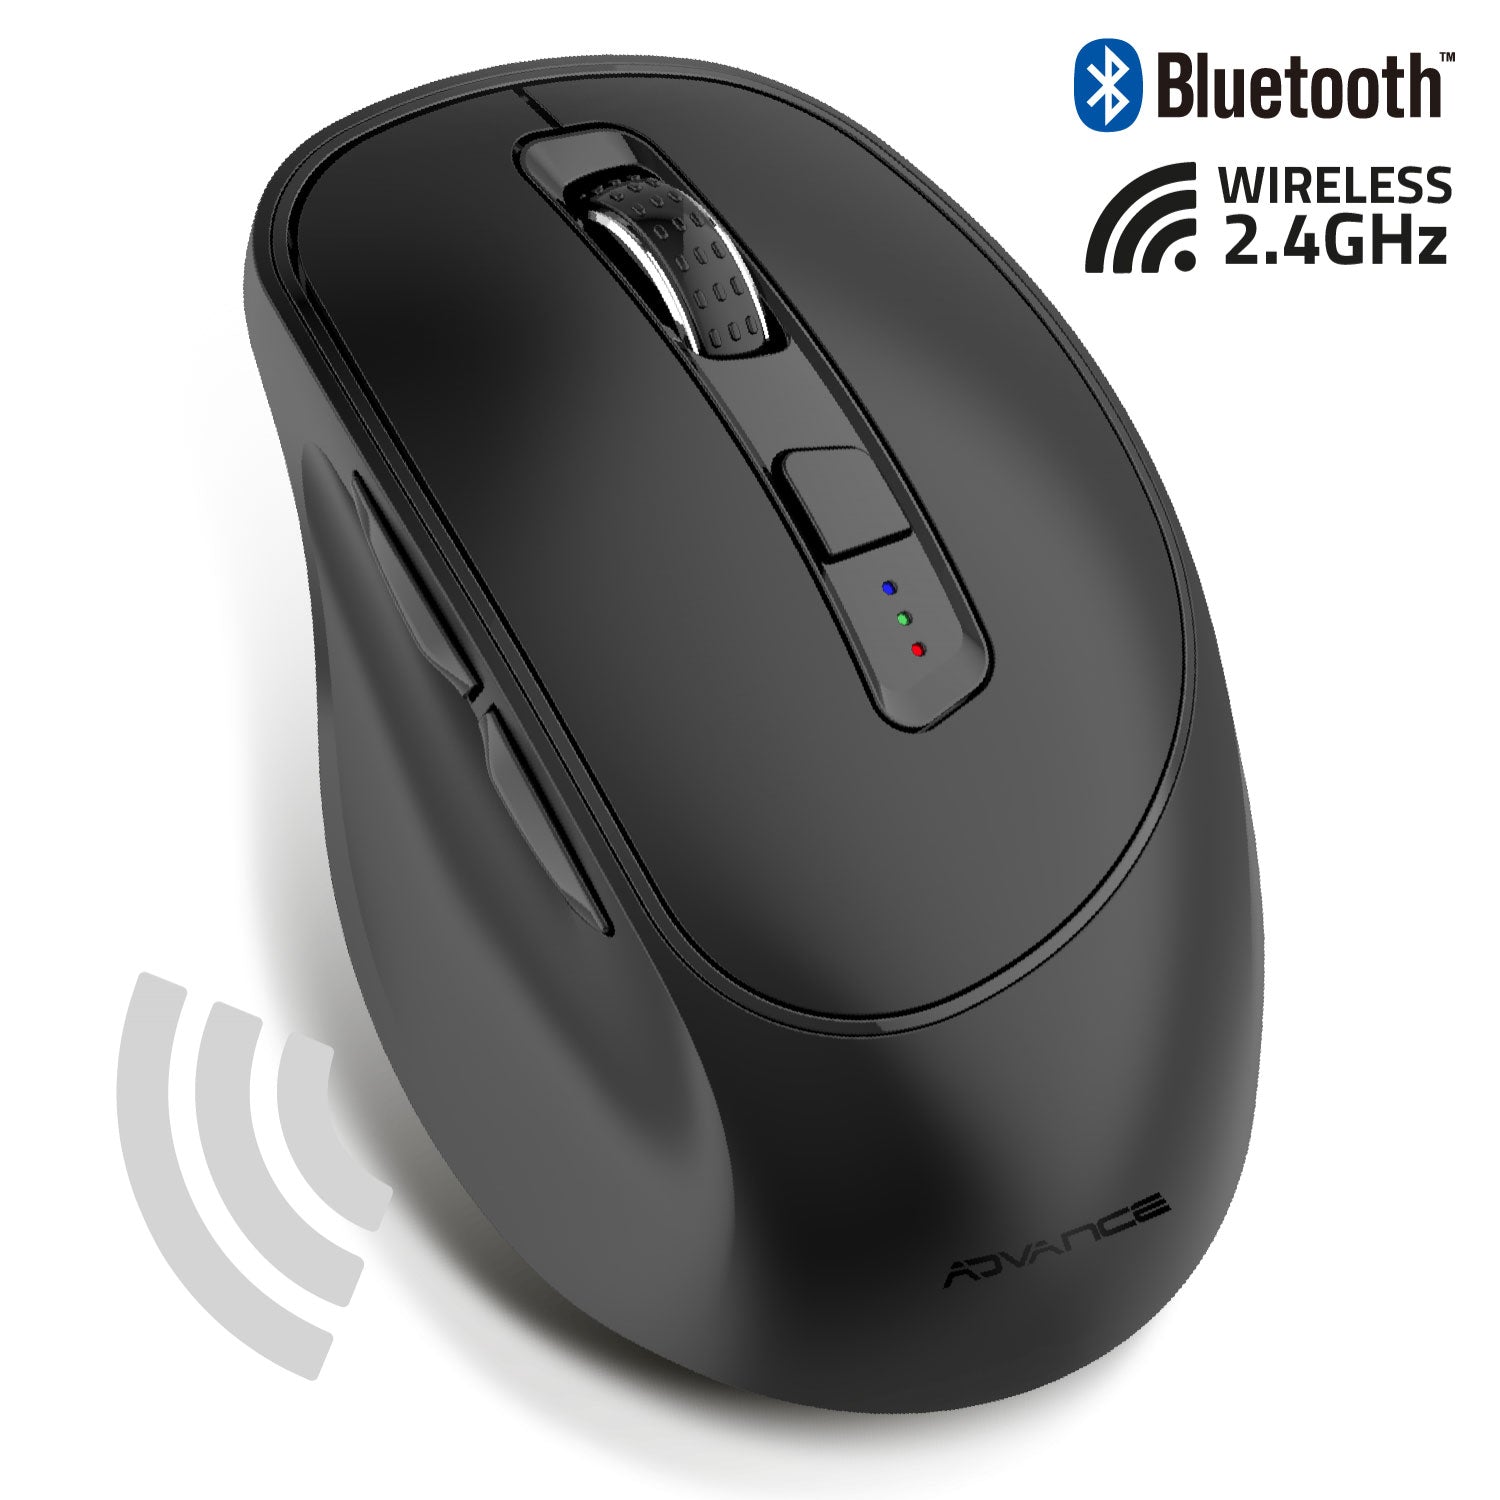 Souris sans fil Bluetooth 2.4GHz, Rechargeable, USB, 6 boutons